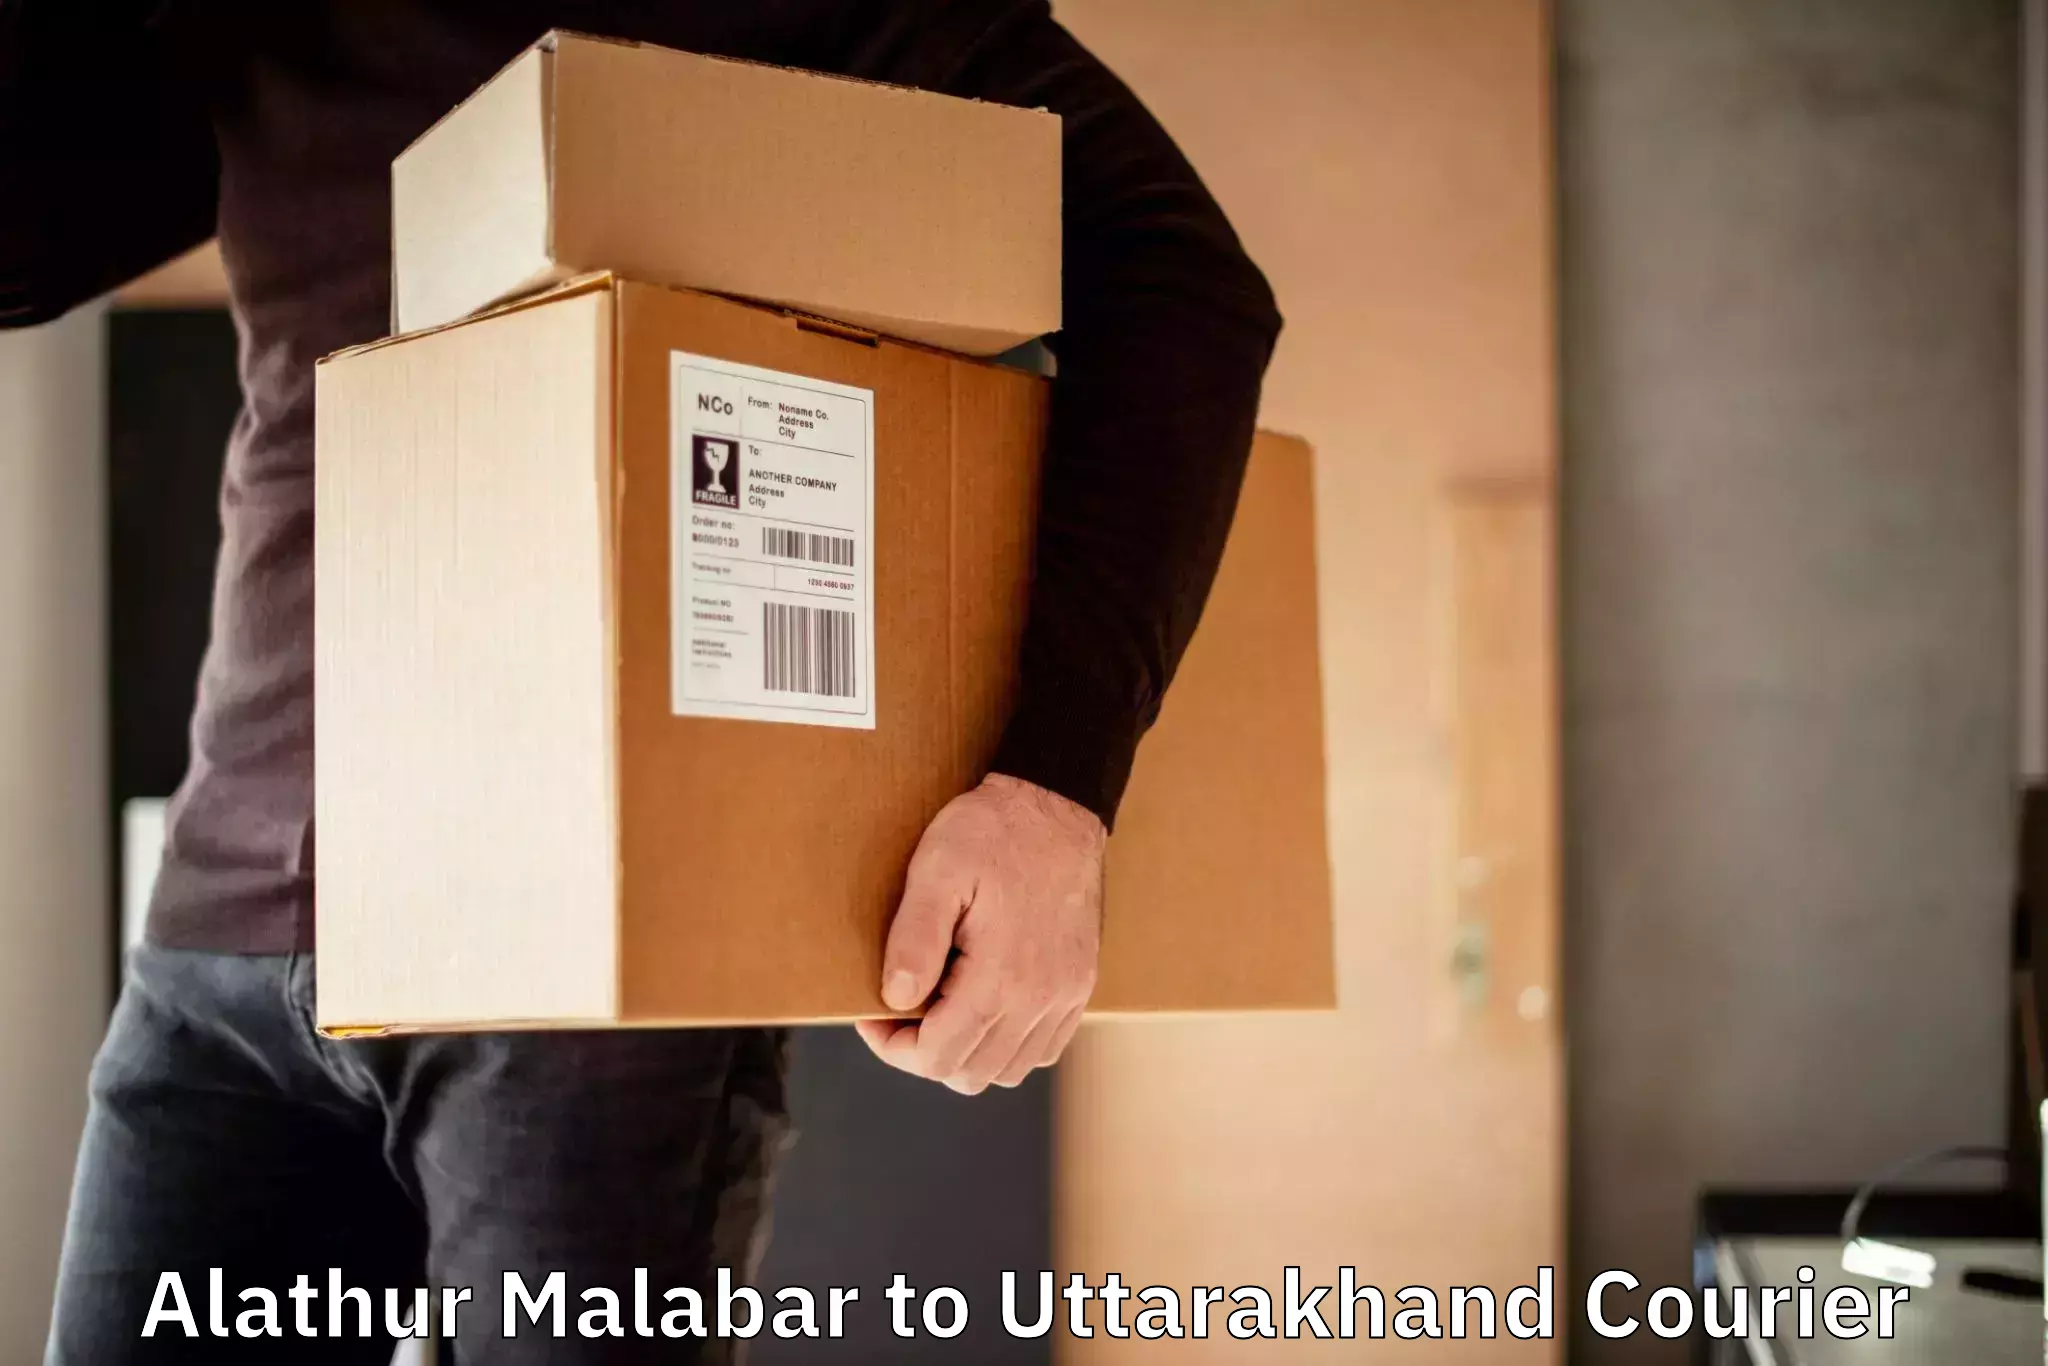 Customer-centric shipping Alathur Malabar to Khatima